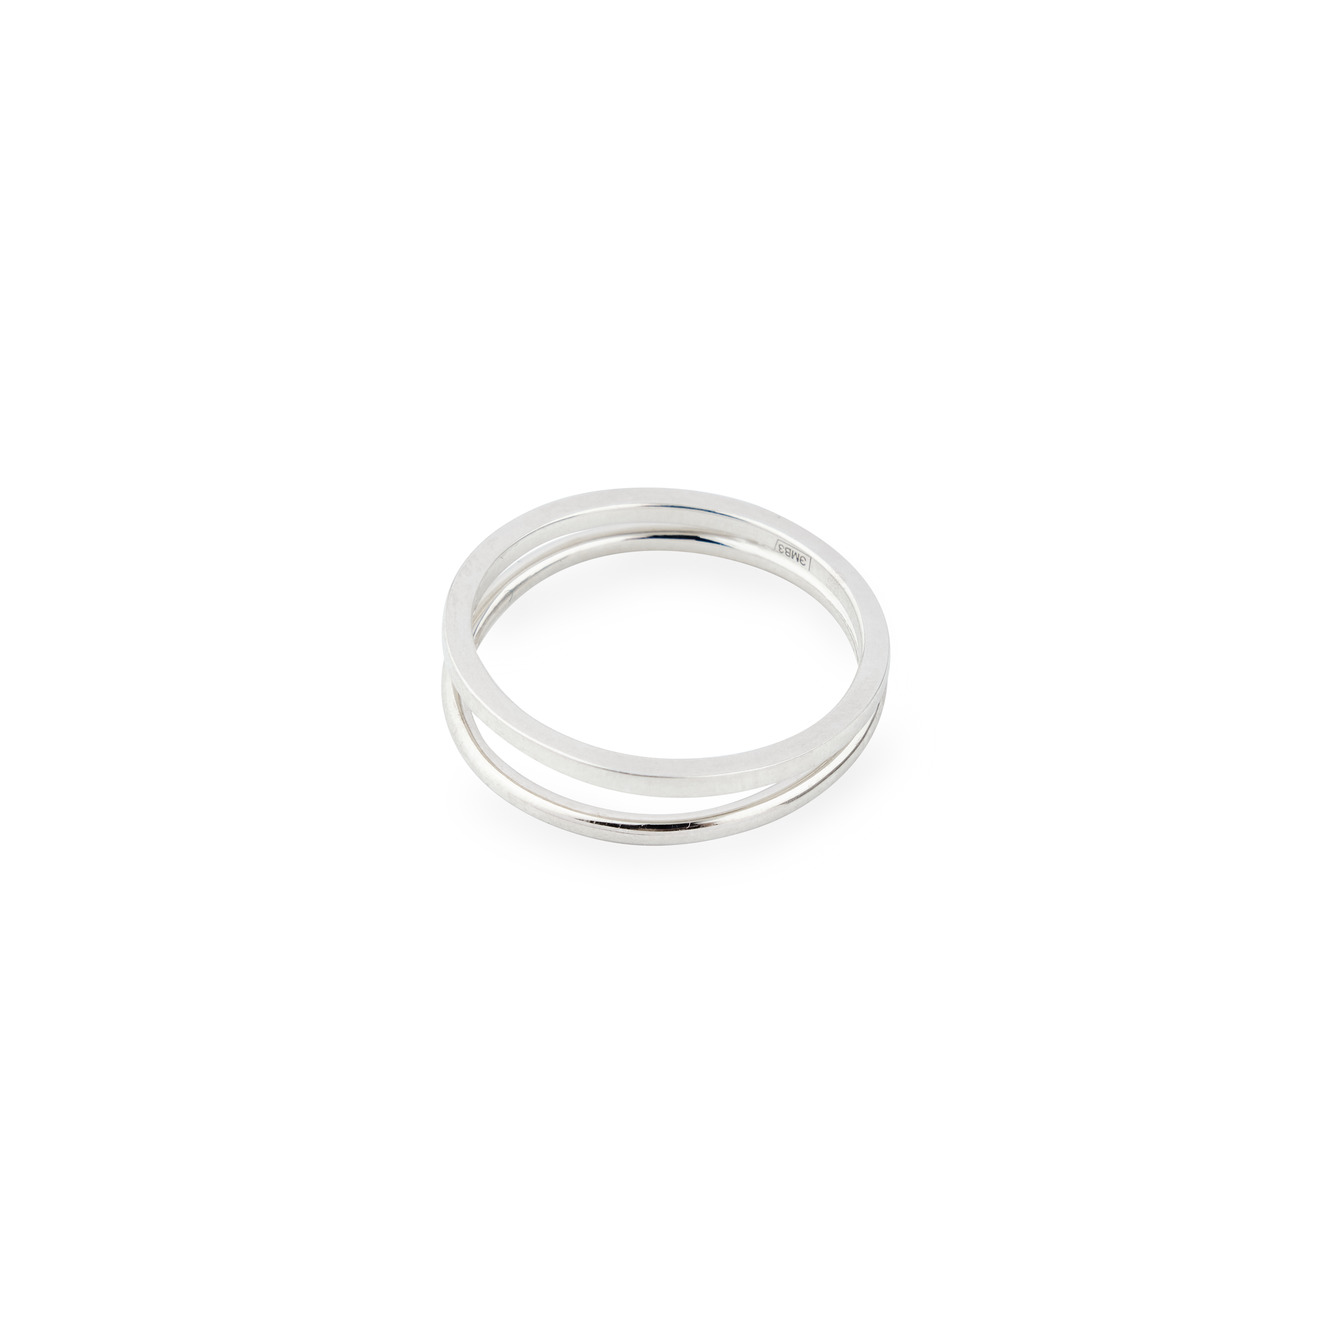 Ms. Marble Двойное кольцо из серебра Karma ms marble подвеска affirmation на цепочке из серебра